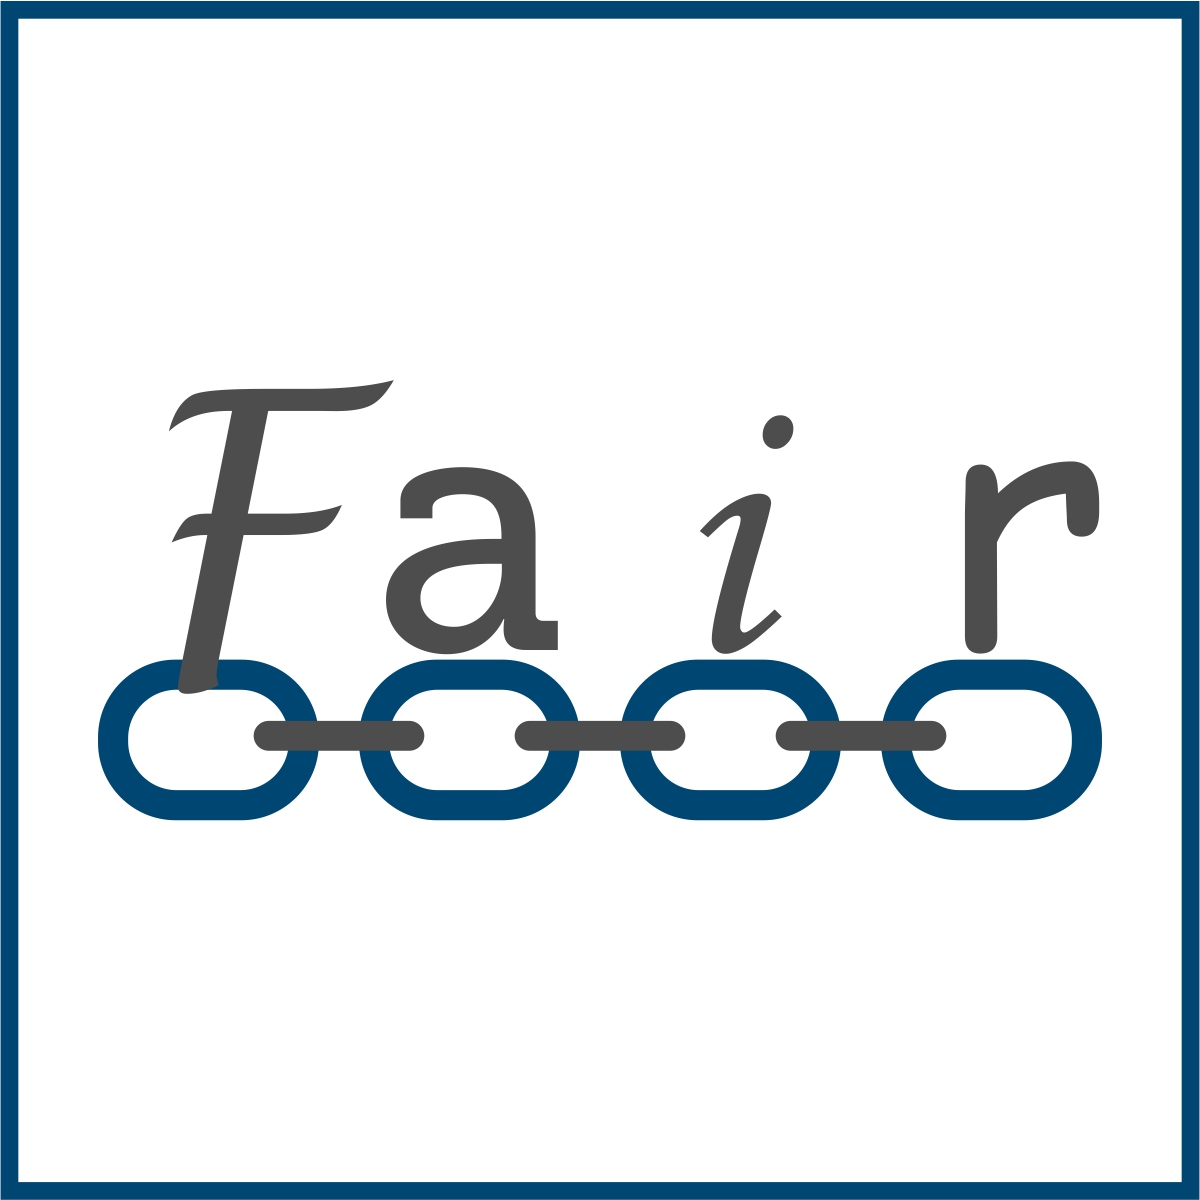 Piktogramm des Textes "Fair" mit einer Kette darunter